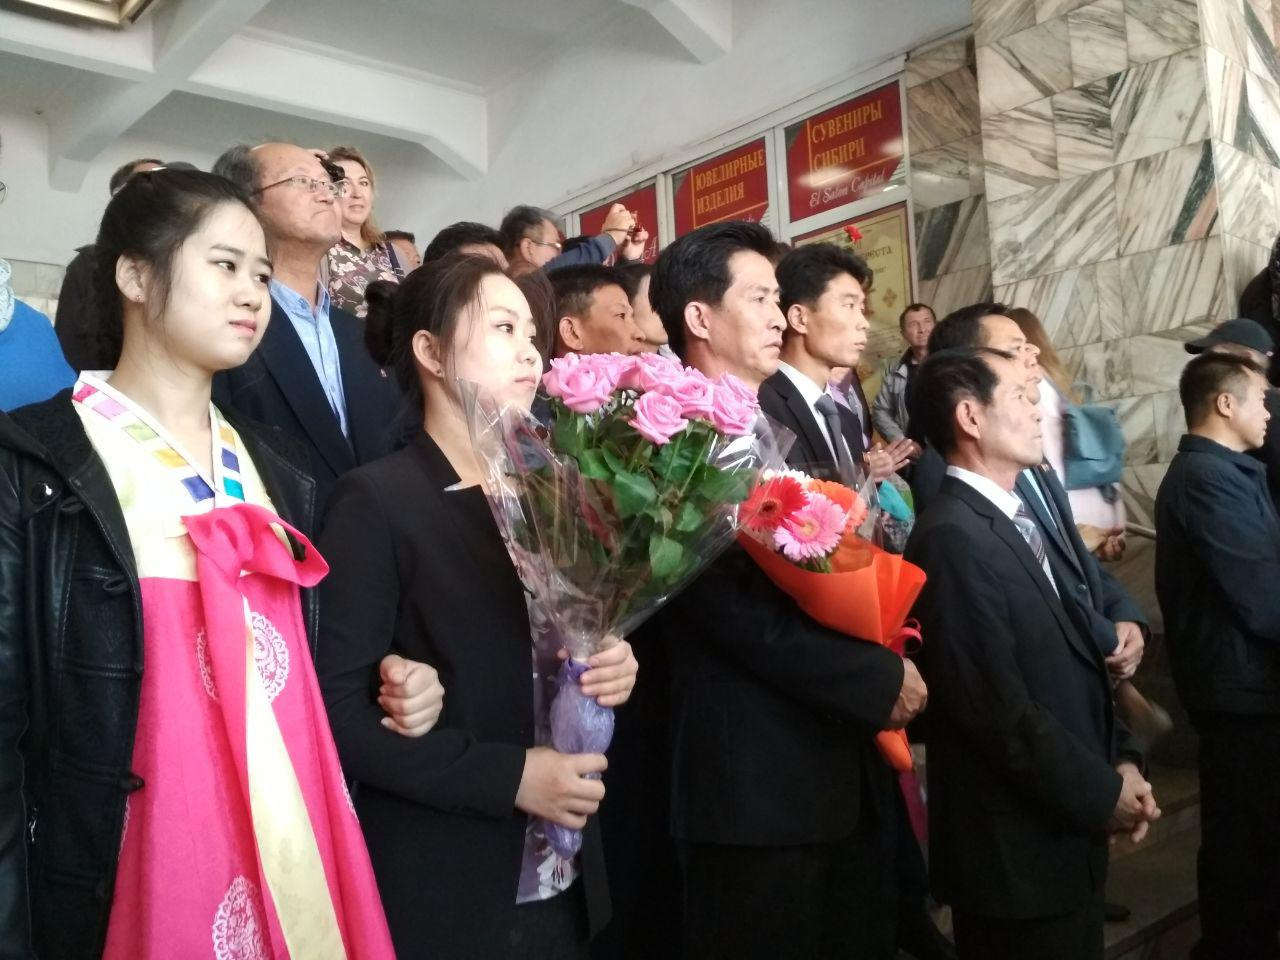 Часть делегации из КНДР пришла в национальных костюмах